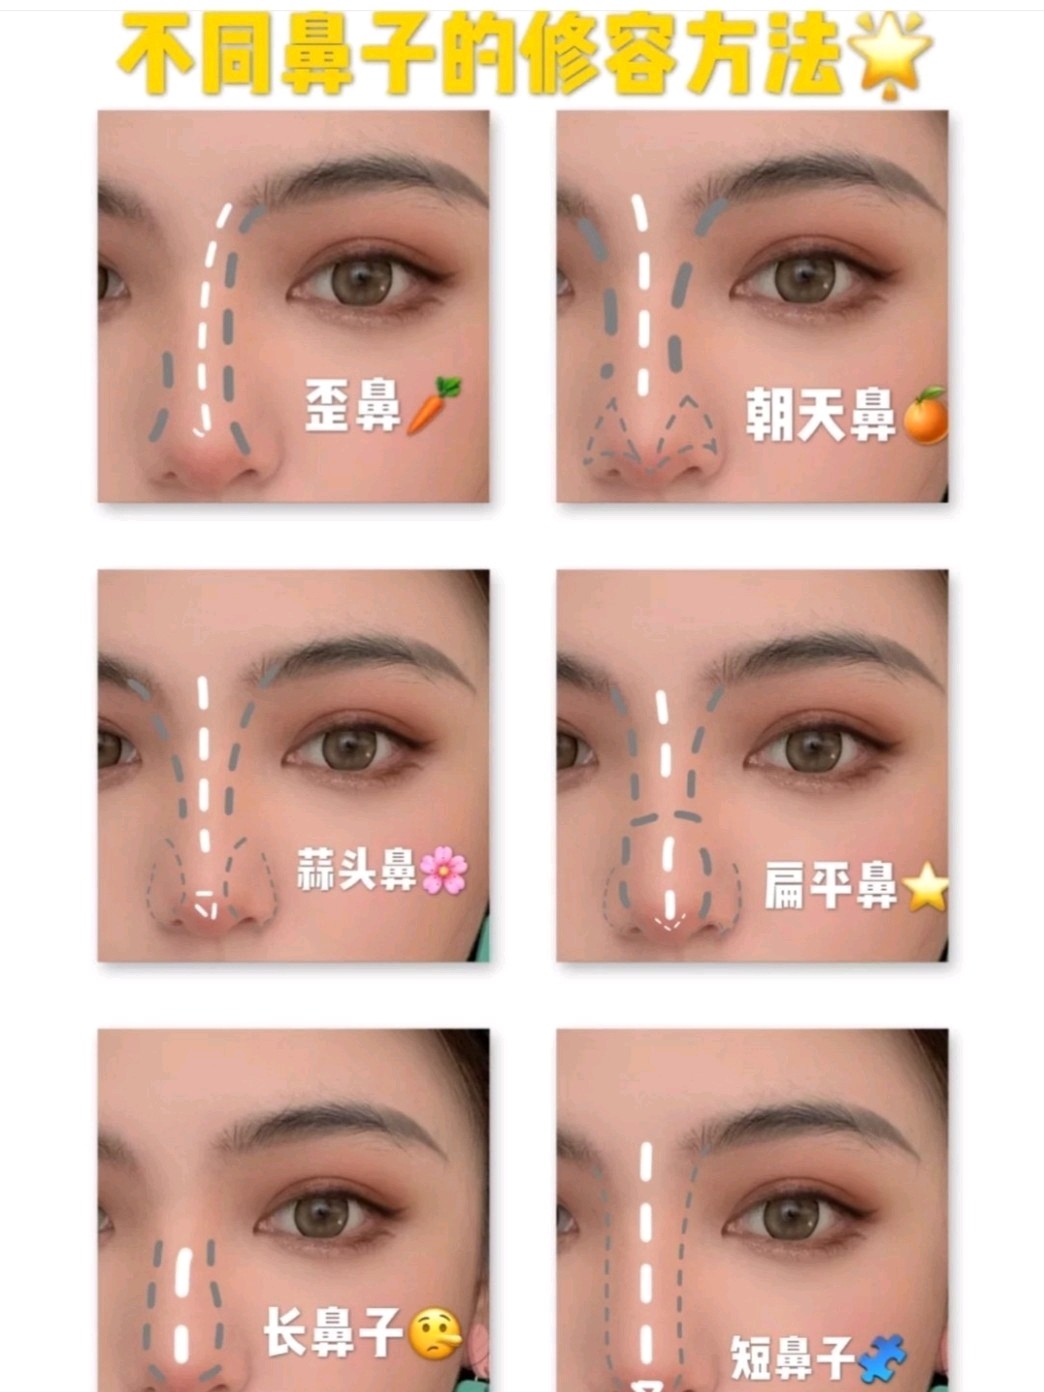 女人十种鼻型分类图图片